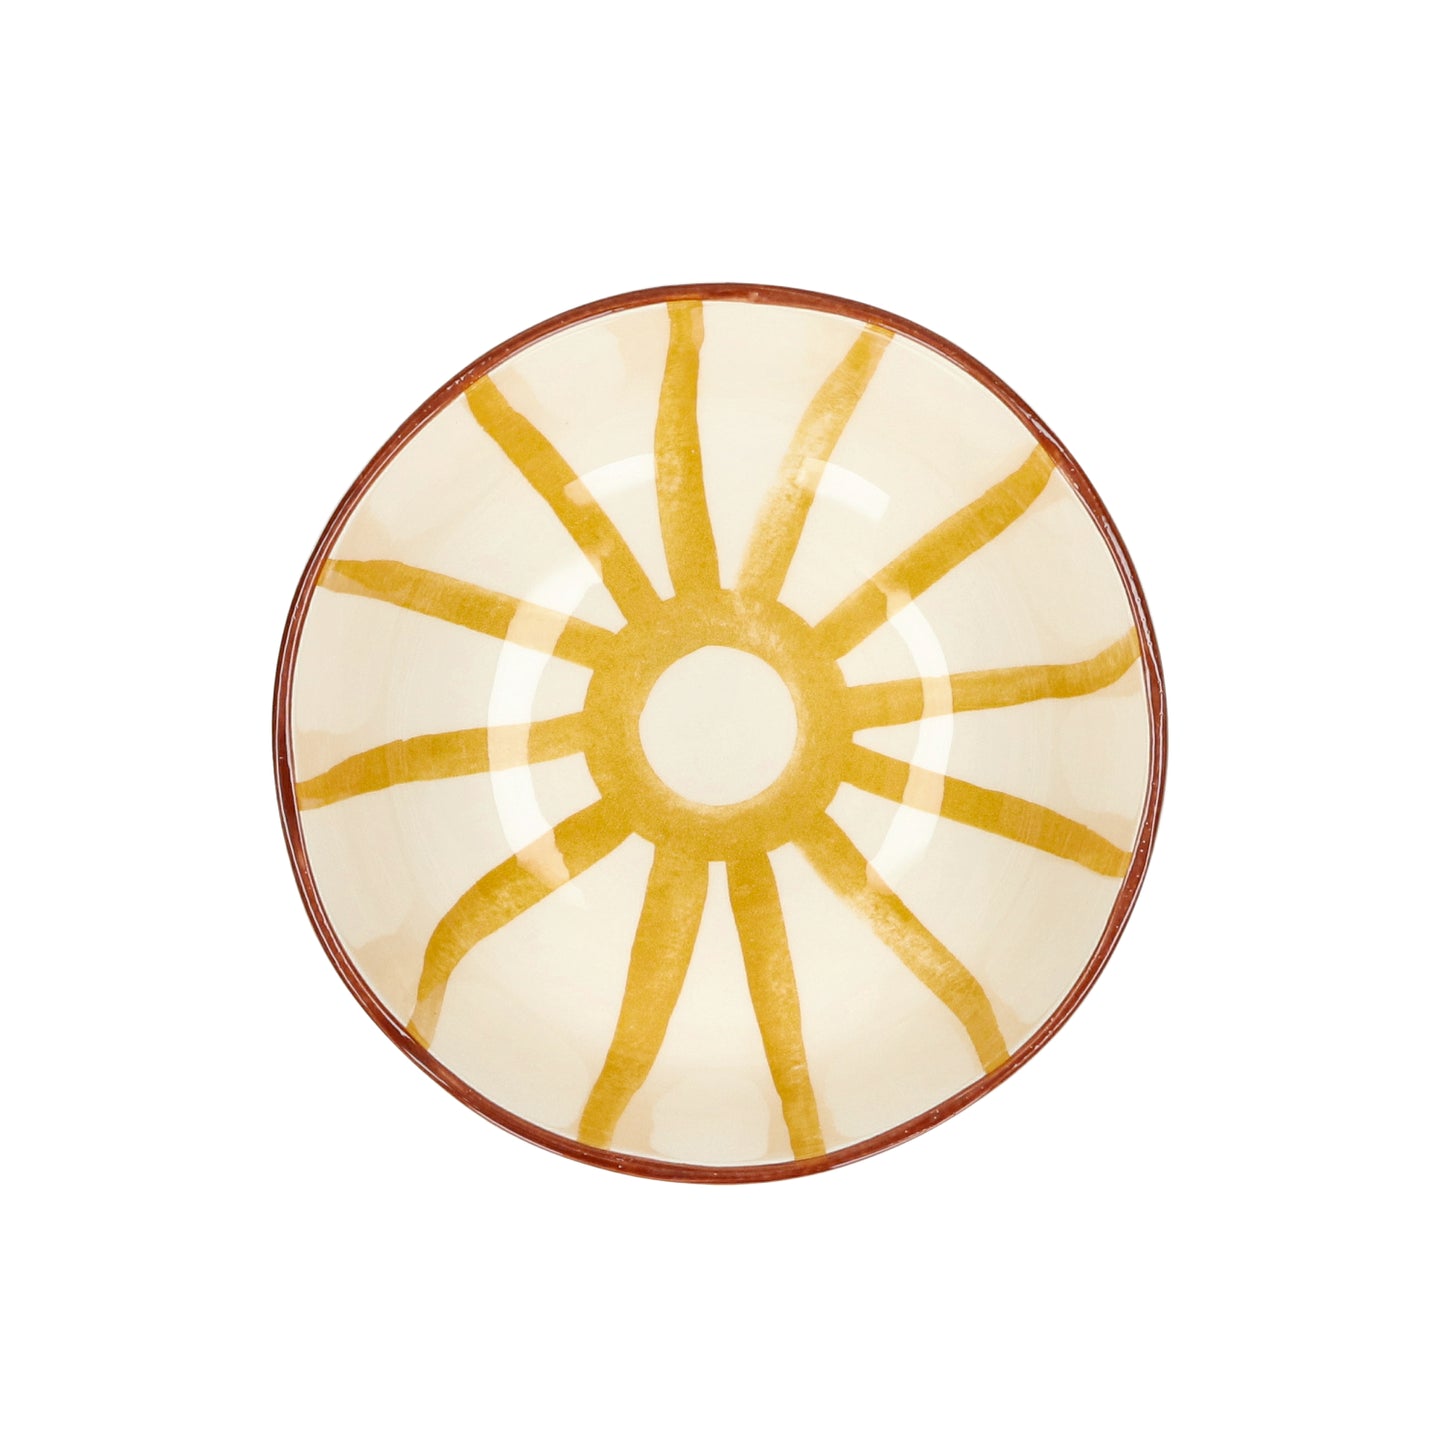 Bol à soupe - MYKONOS - porcelaine - DIA 15,2 x H 6 cm - jaune